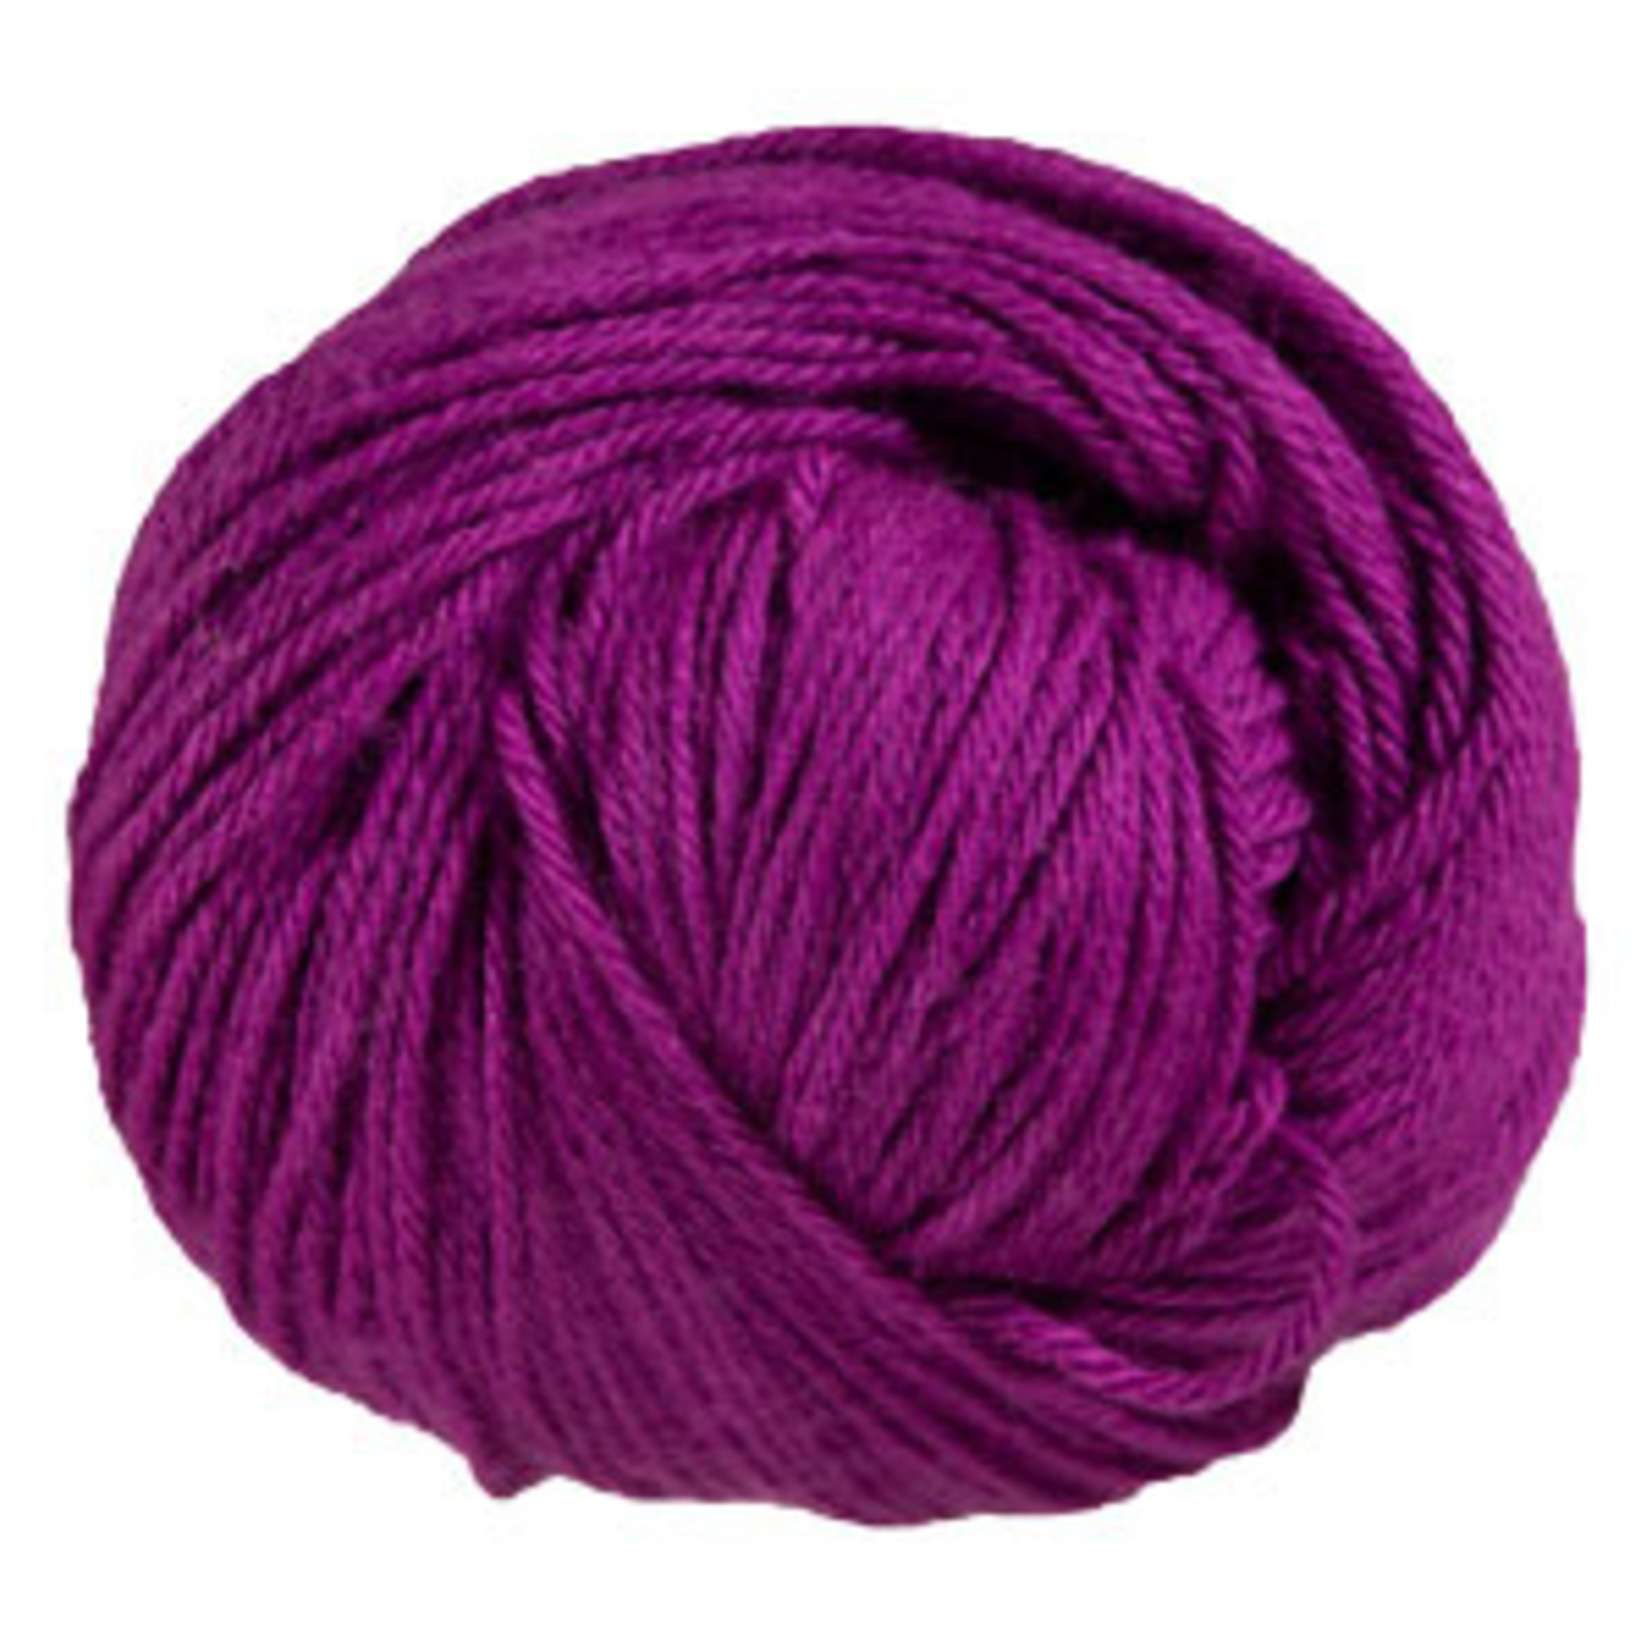 Berroco Vintage Wool, 51136, Aurora